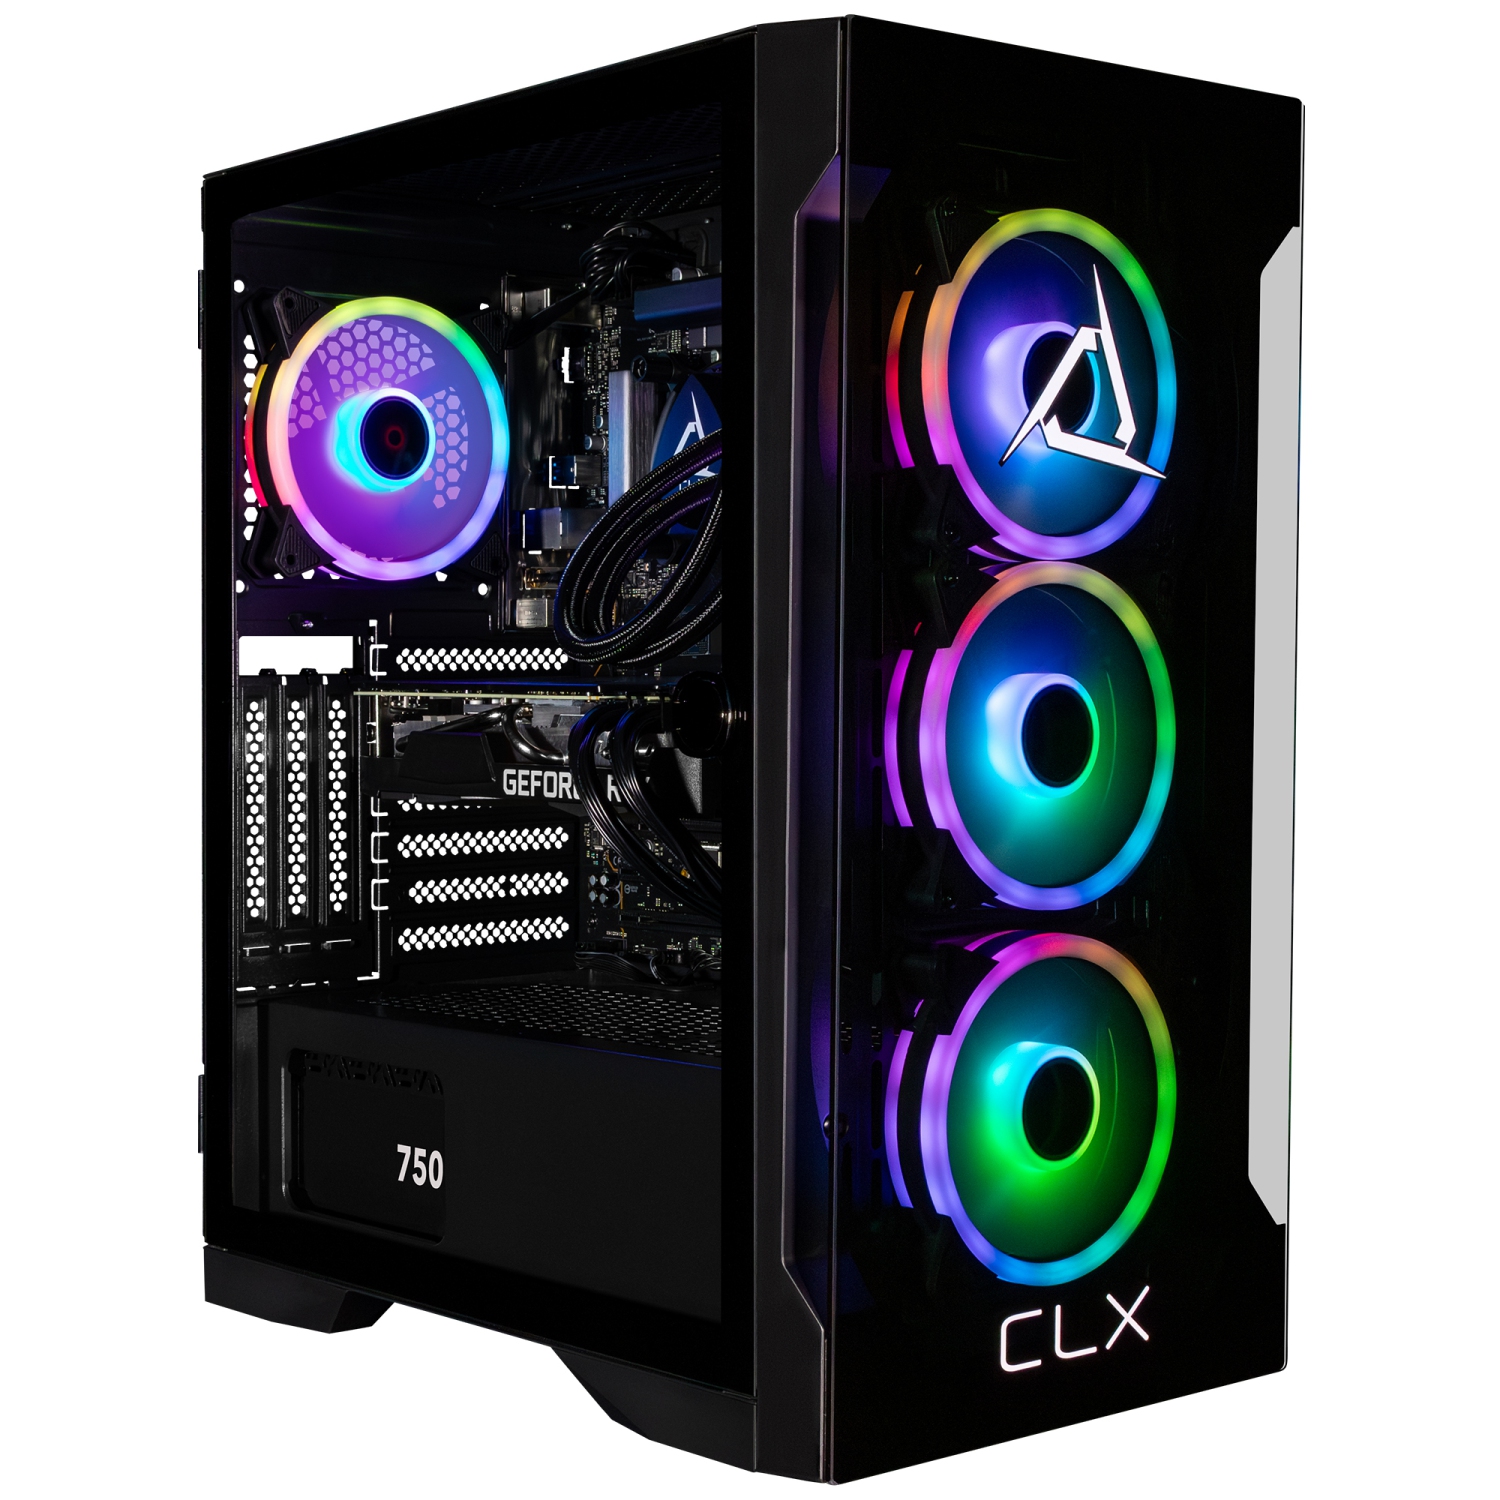 CLX SET Gaming Desktop - Liquid Cooled Intel Core i9 10900KF 3.7GHz 10-Core CPU, 32GB DDR4 RAM, GeForce RTX 3060 Ti 8GB GDDR6, 960GB SSD, 4TB HDD, WiFi, Windows 11 Home